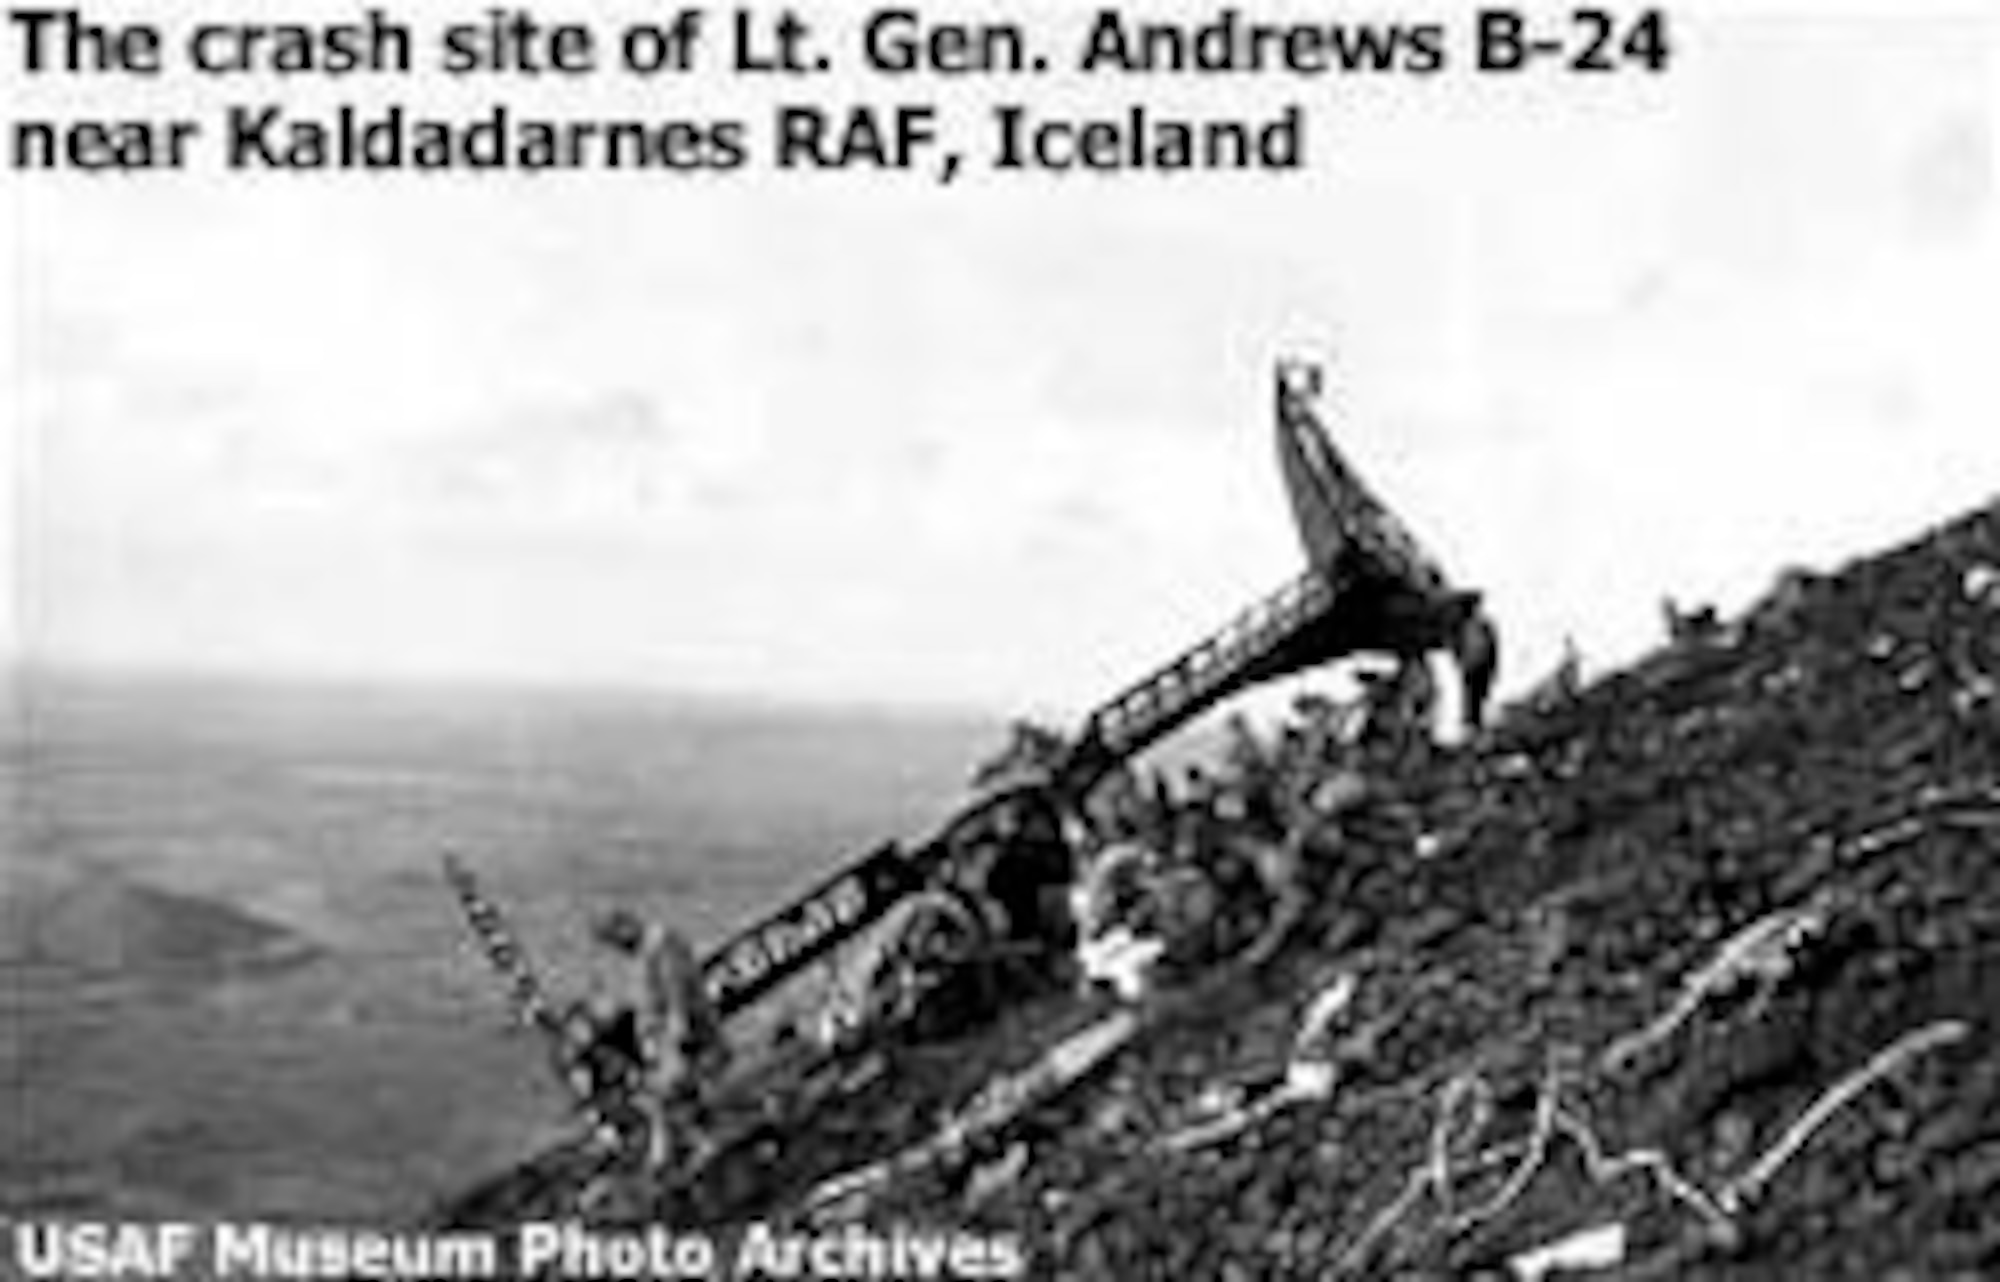 The crash site of General Andrews' B-24 near Kaldadarnes RAF, Iceland. (U.S. Air Force photo)